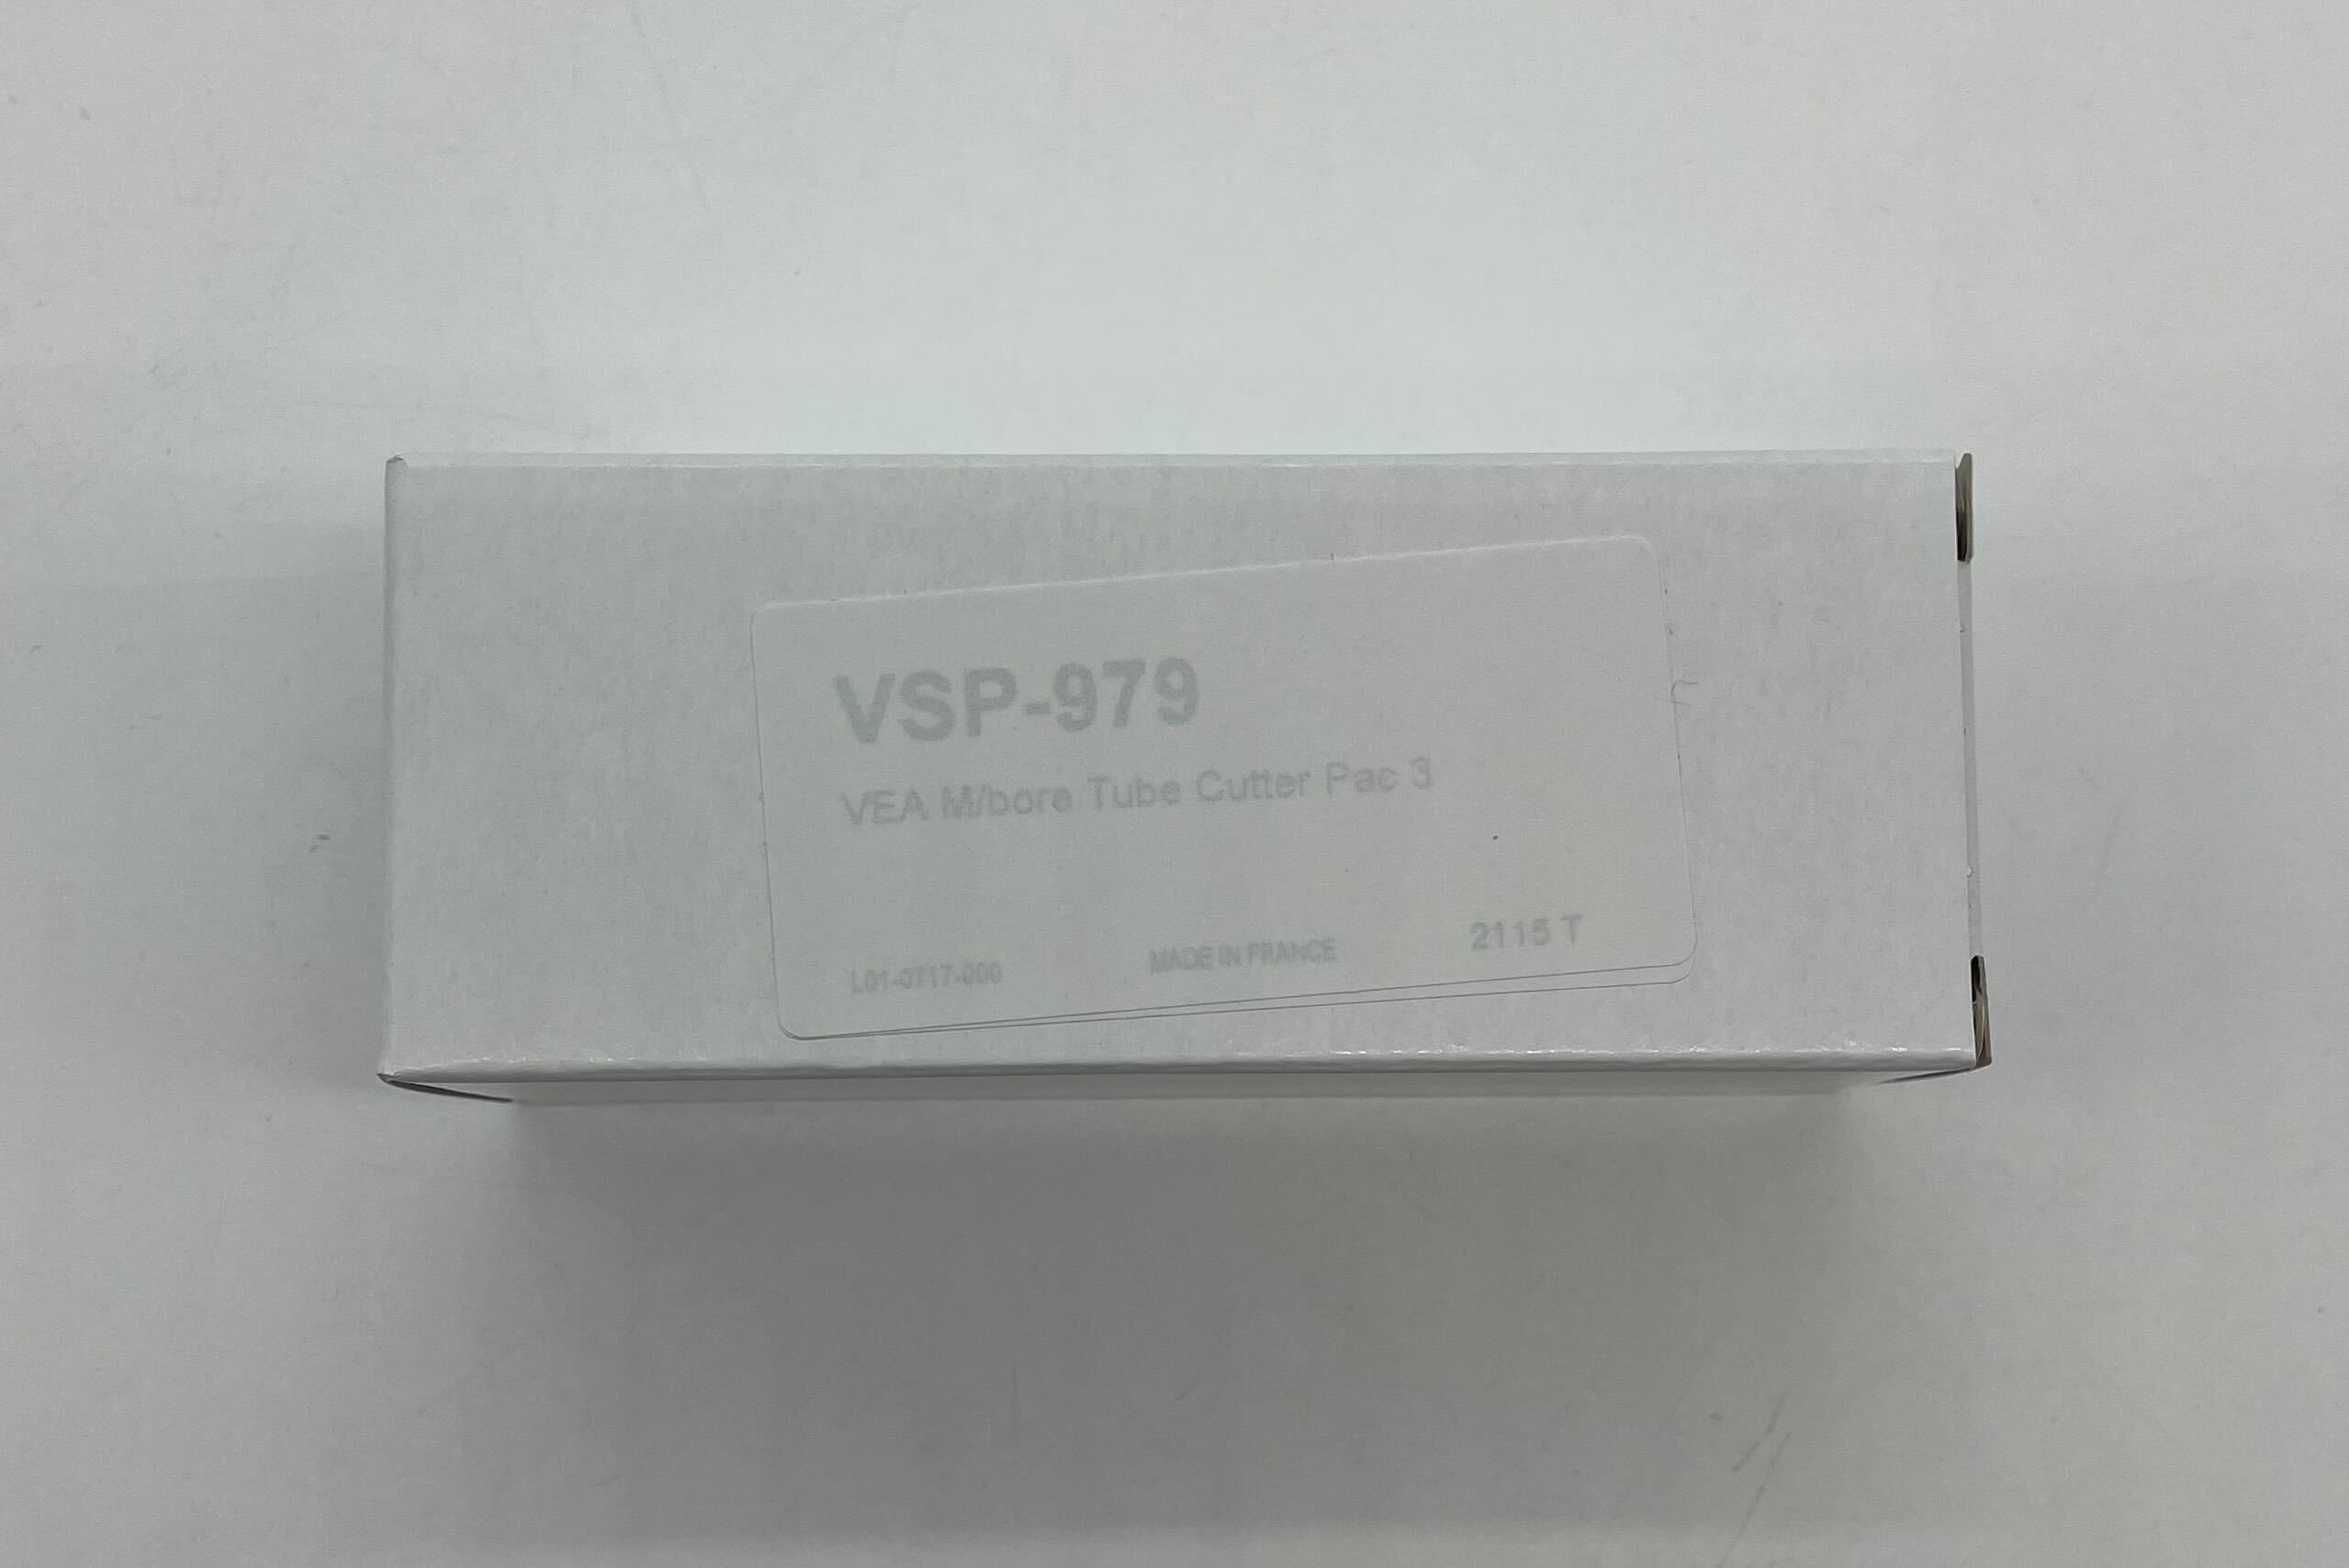 Vesda VSP-979